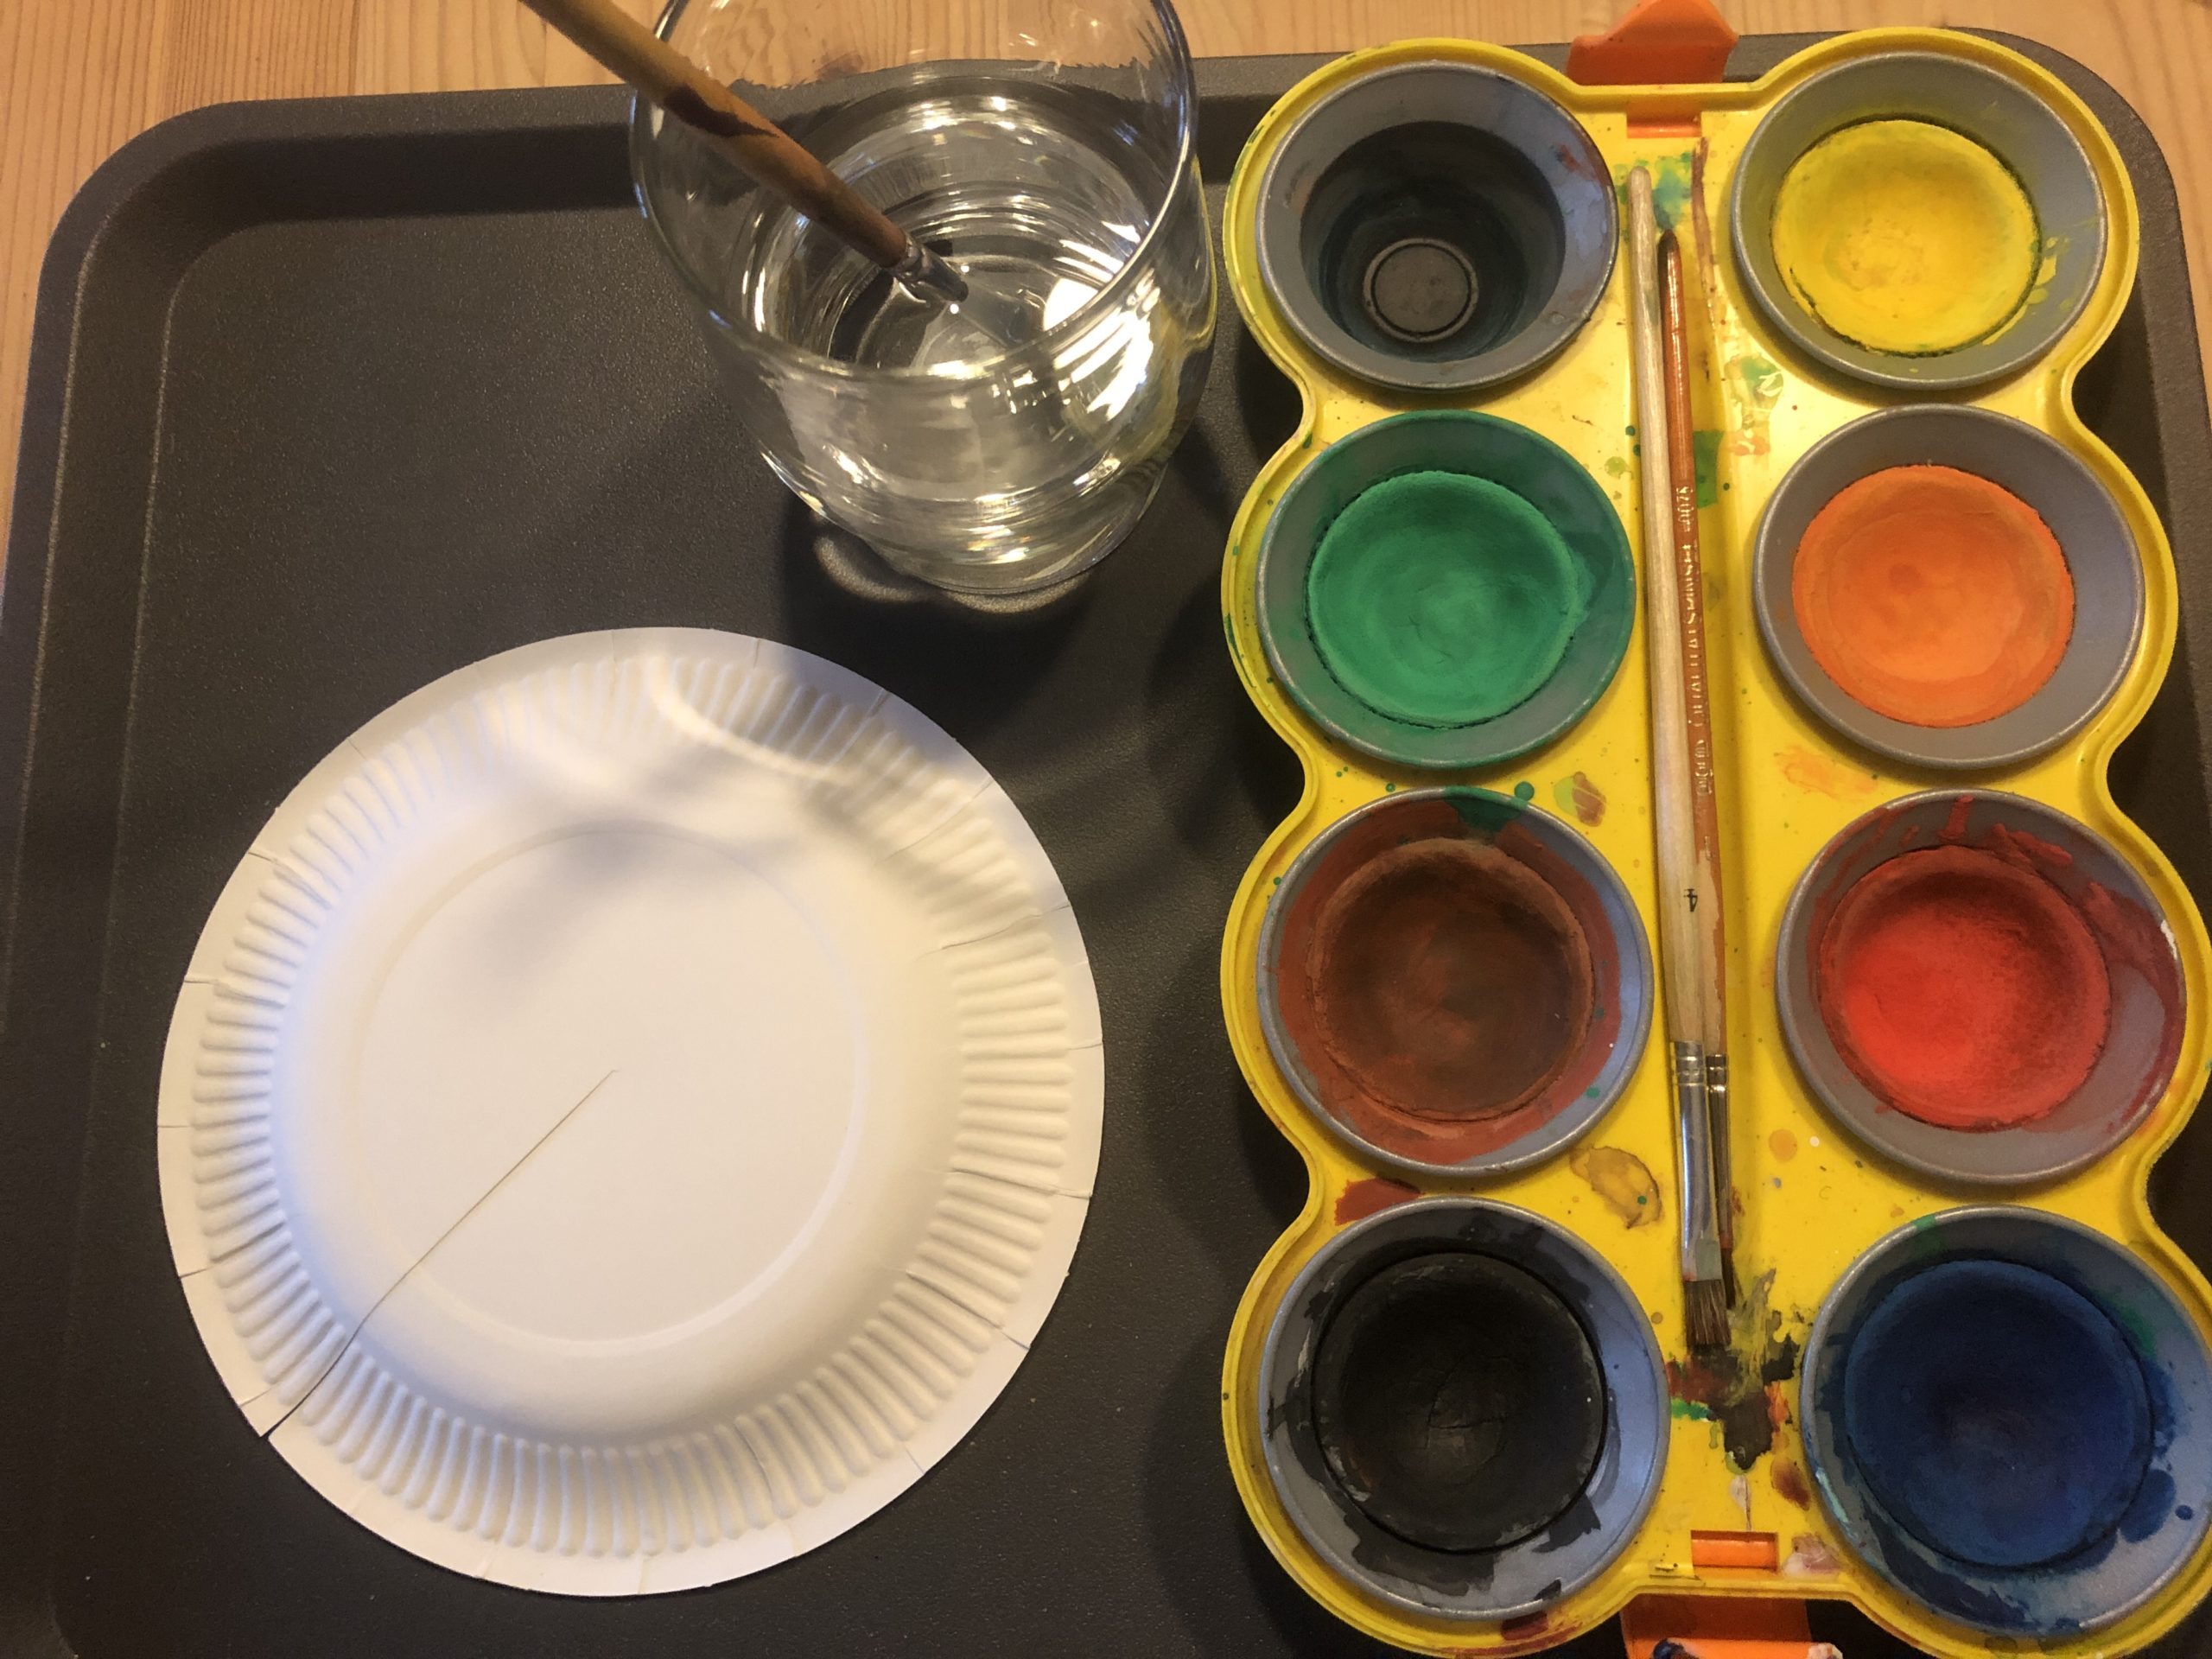 Bild zum Schritt 1 für das Bastel- und DIY-Abenteuer für Kinder: 'Stellt die Wasserfarben bereit, legt eine Malunterlage darunter und zieht...'